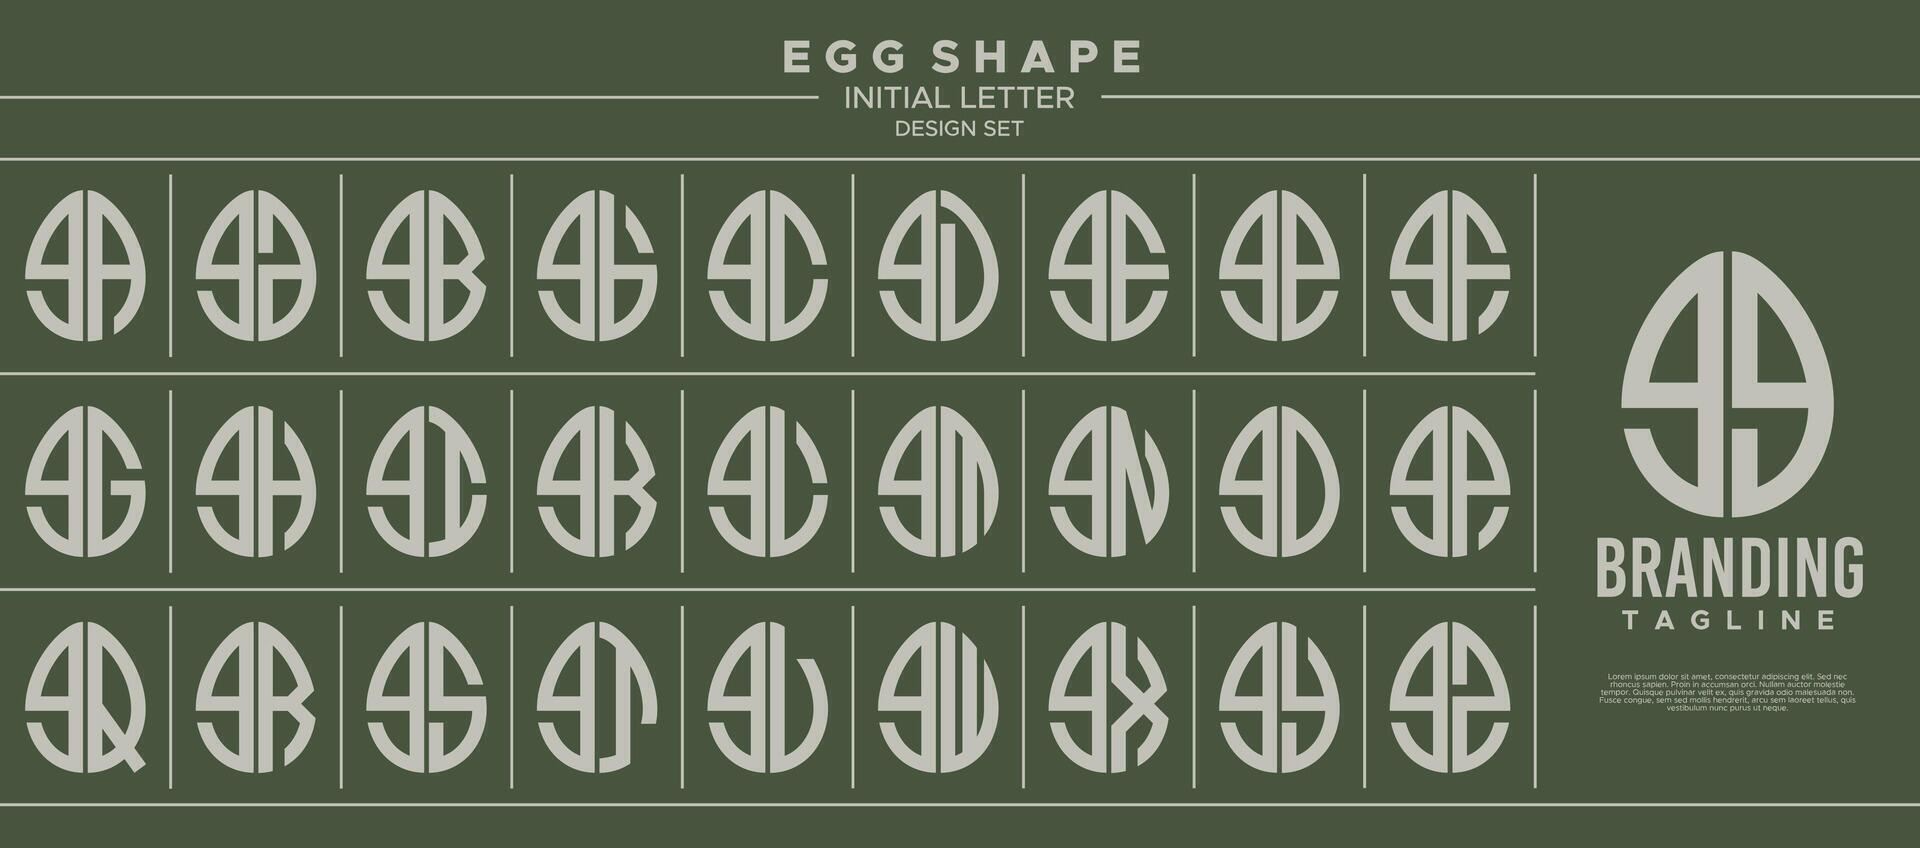 conjunto de comida huevo forma minúsculas letra sol gg logo, número 99 diseño vector